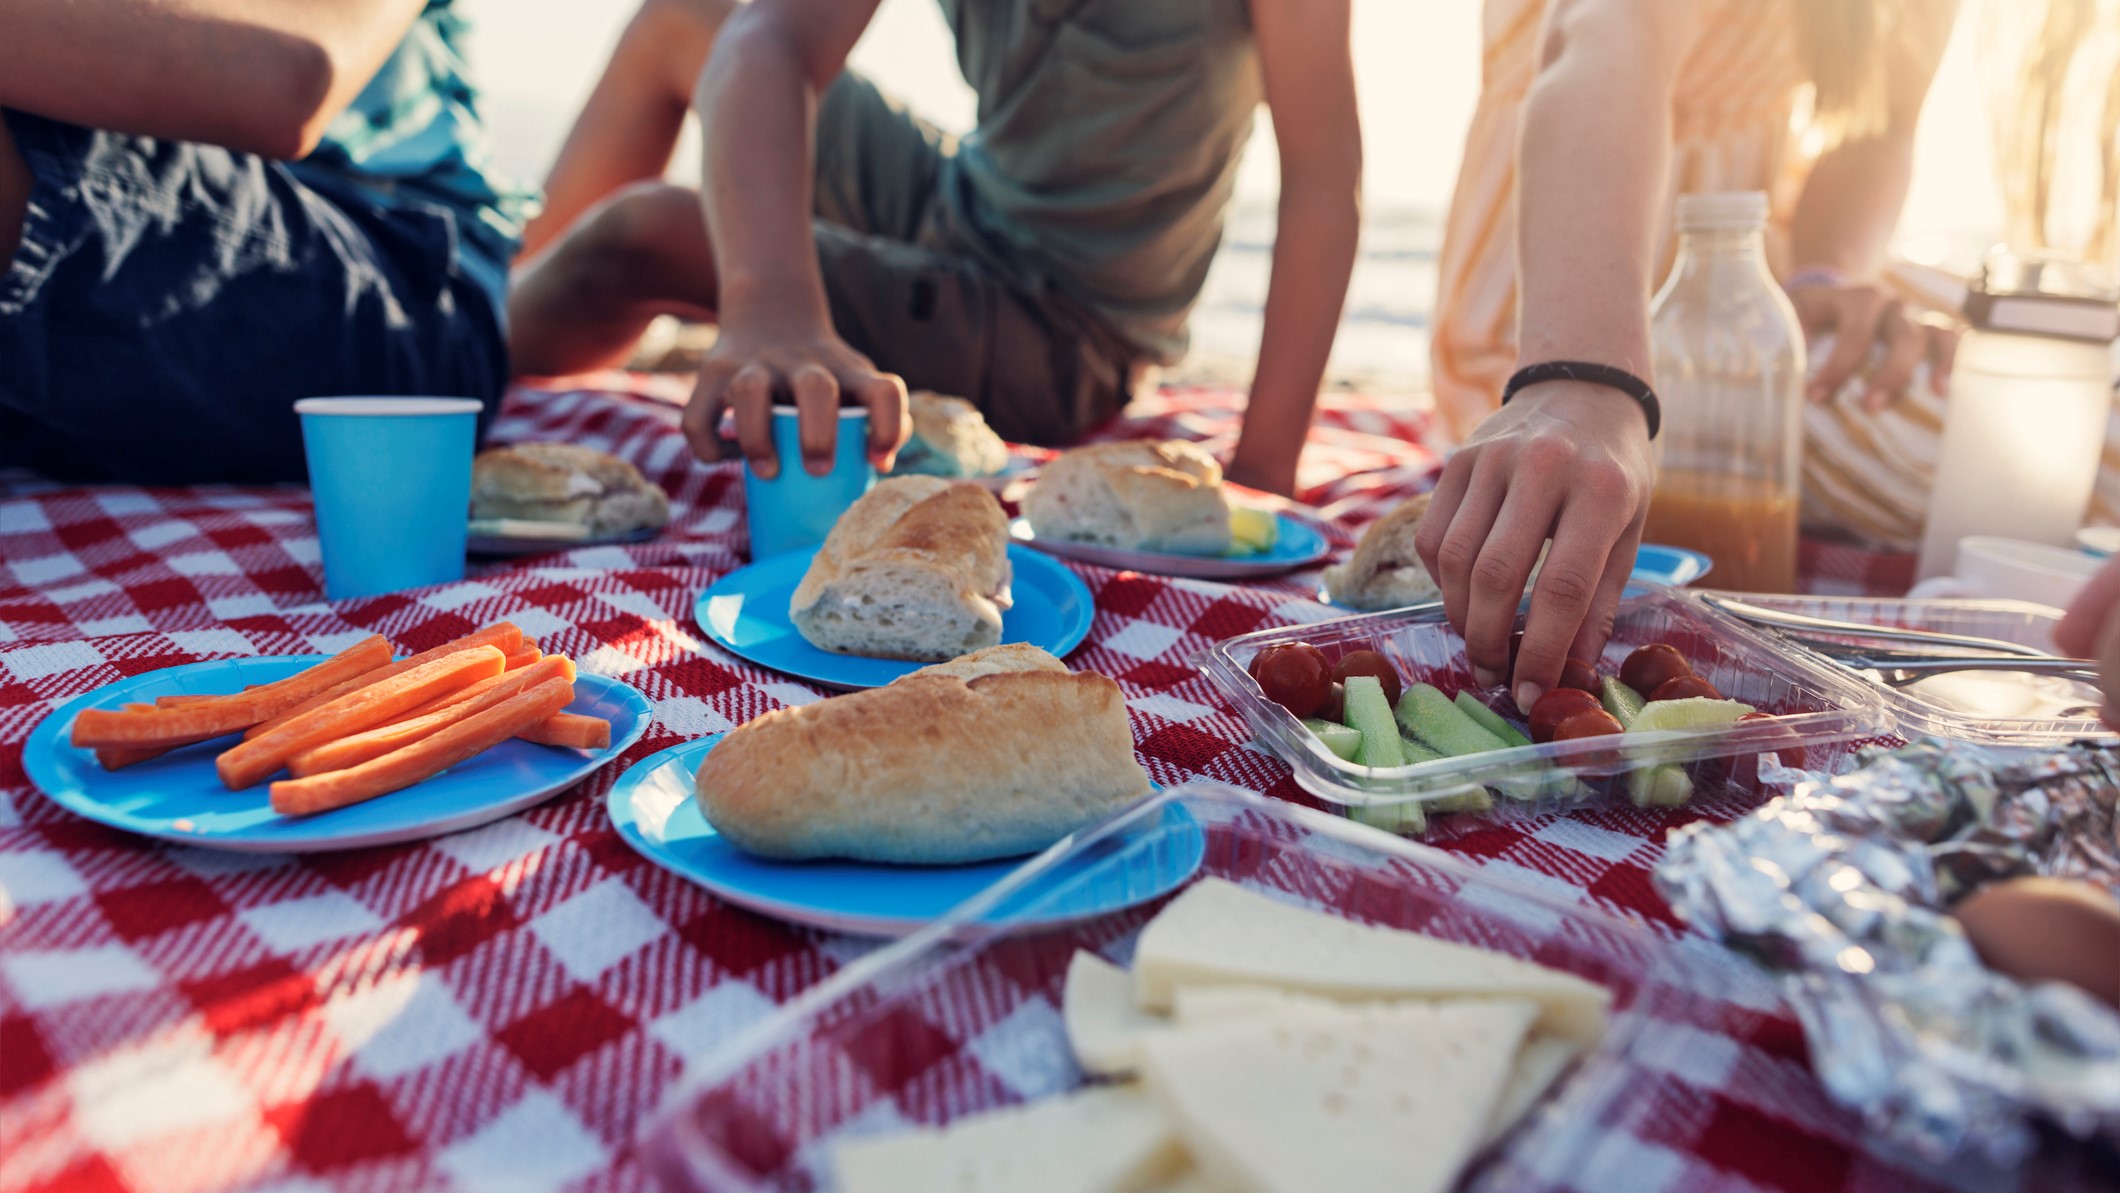 Una familia disfruta de un picnic con diferente tipo de comida en plena playa.